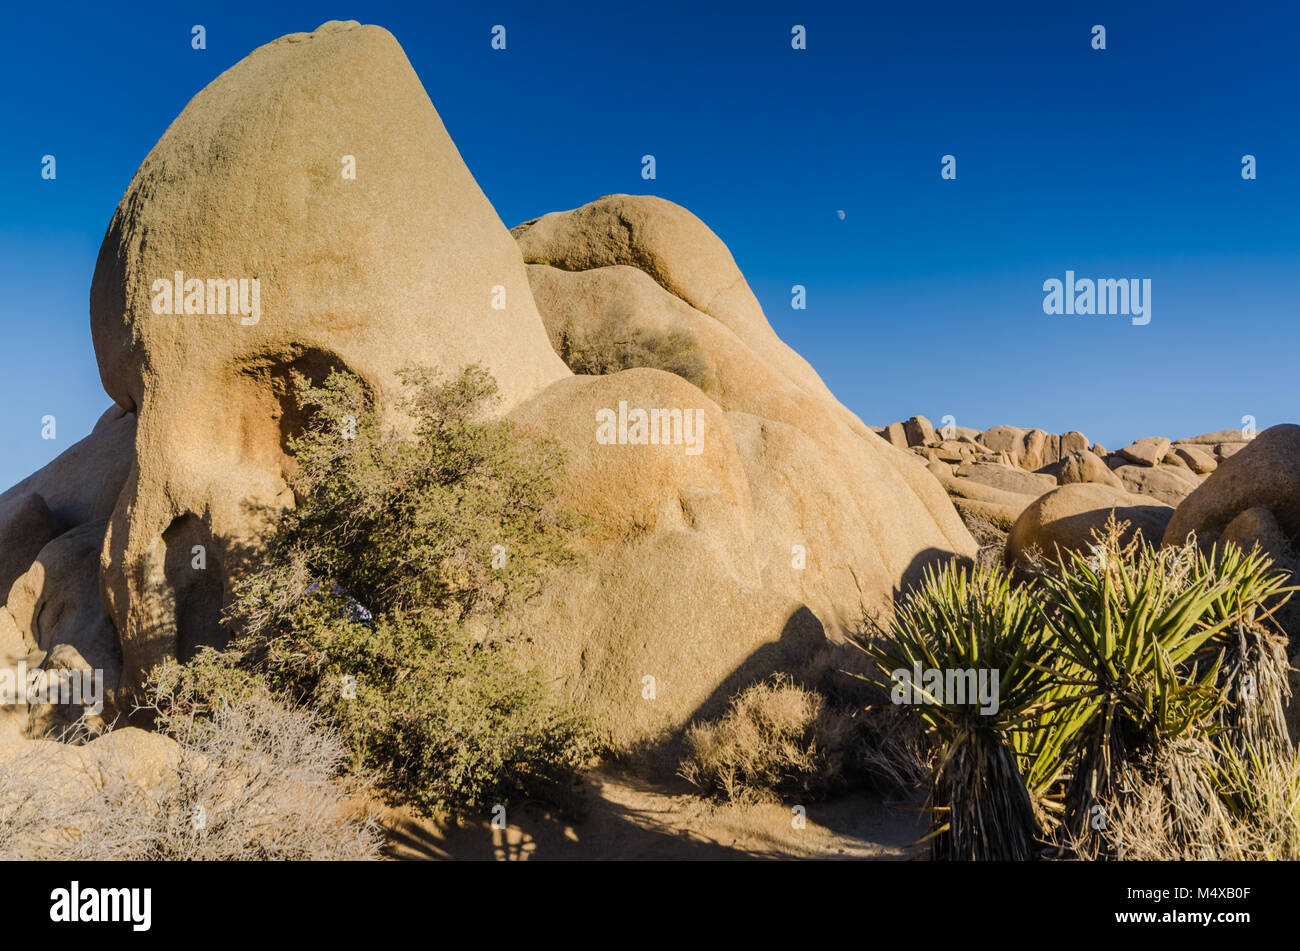 Il cranio Rock formazione geologica è uno dei preferiti di visitatori a Joshua Tree National Park in Yucca Valley, Deserto Mojave, California USA. Foto Stock